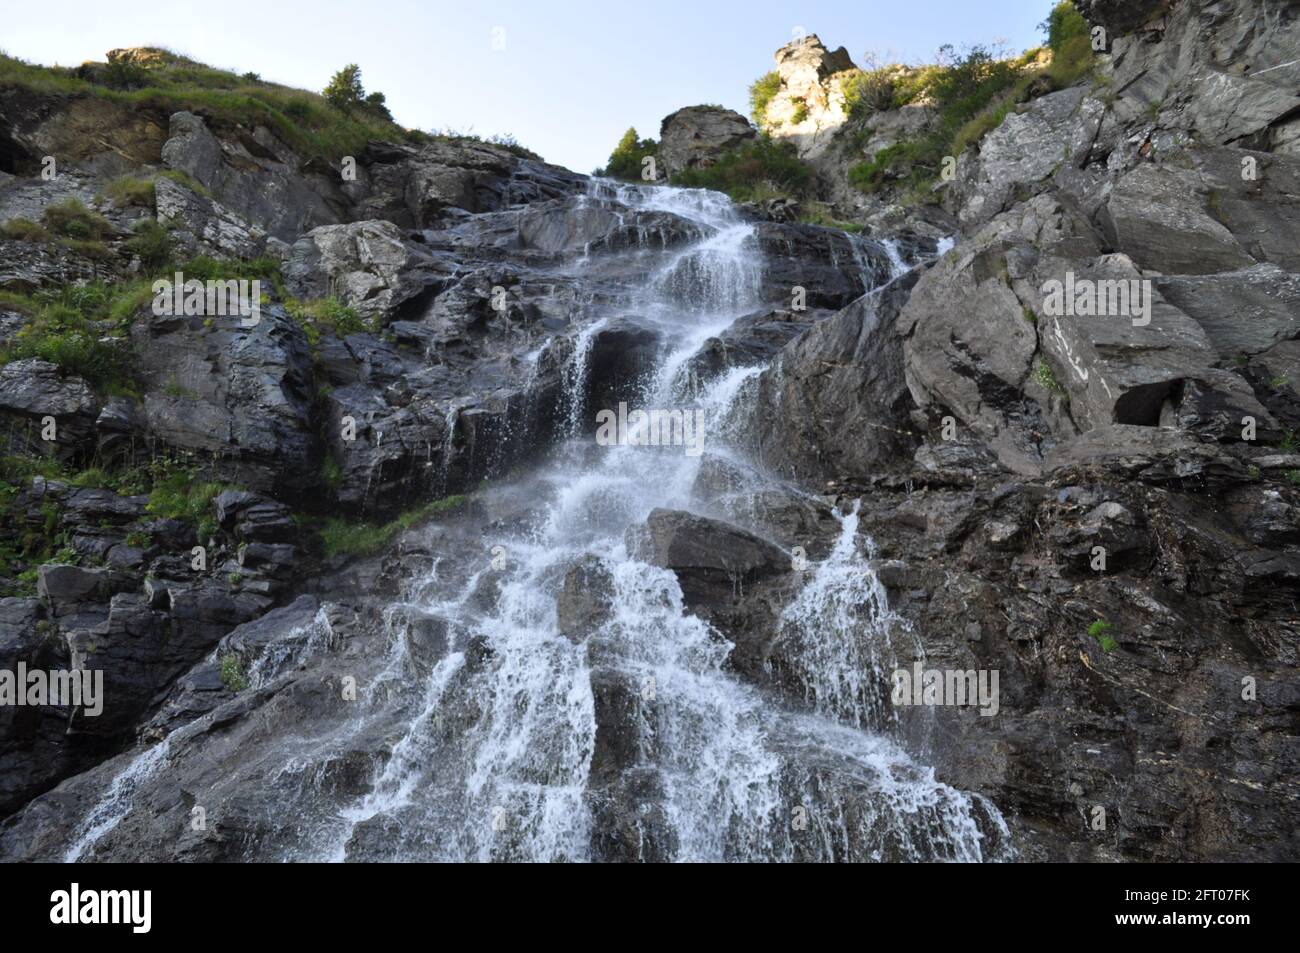 This is Capra waterfall in Romania, Transfagarasan Stock Photo